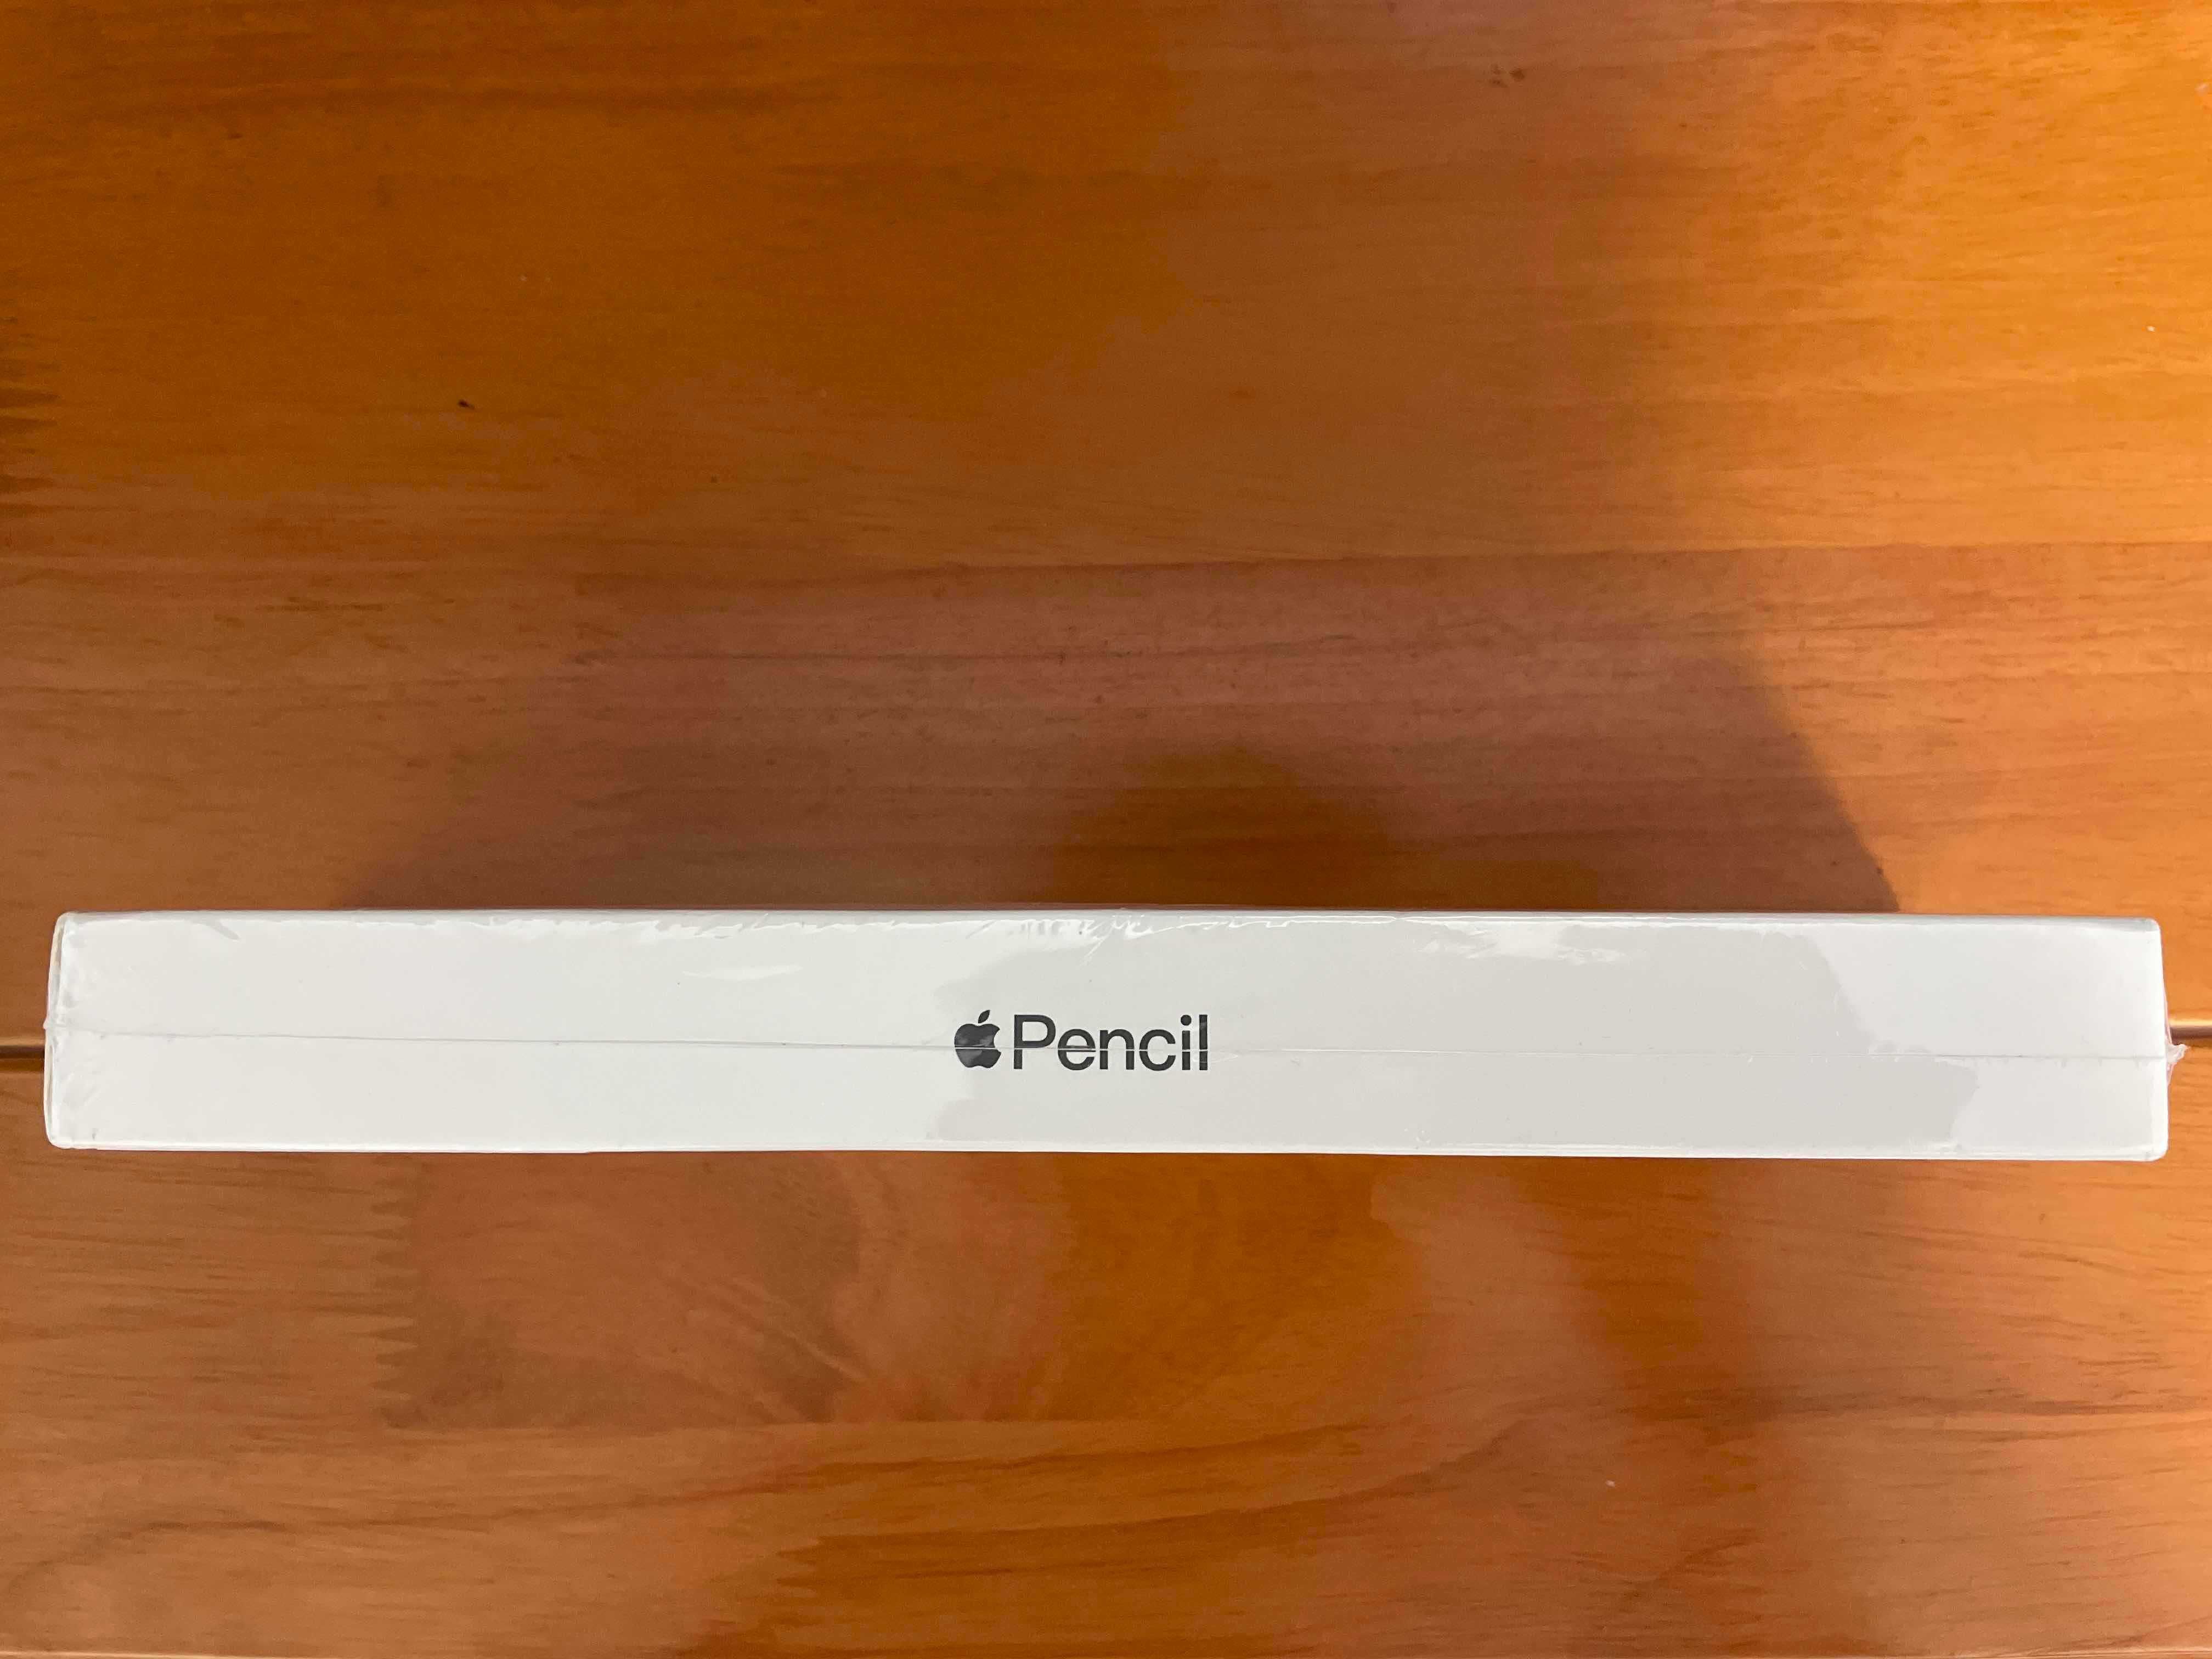 Apple pencil 2 generacja nowy